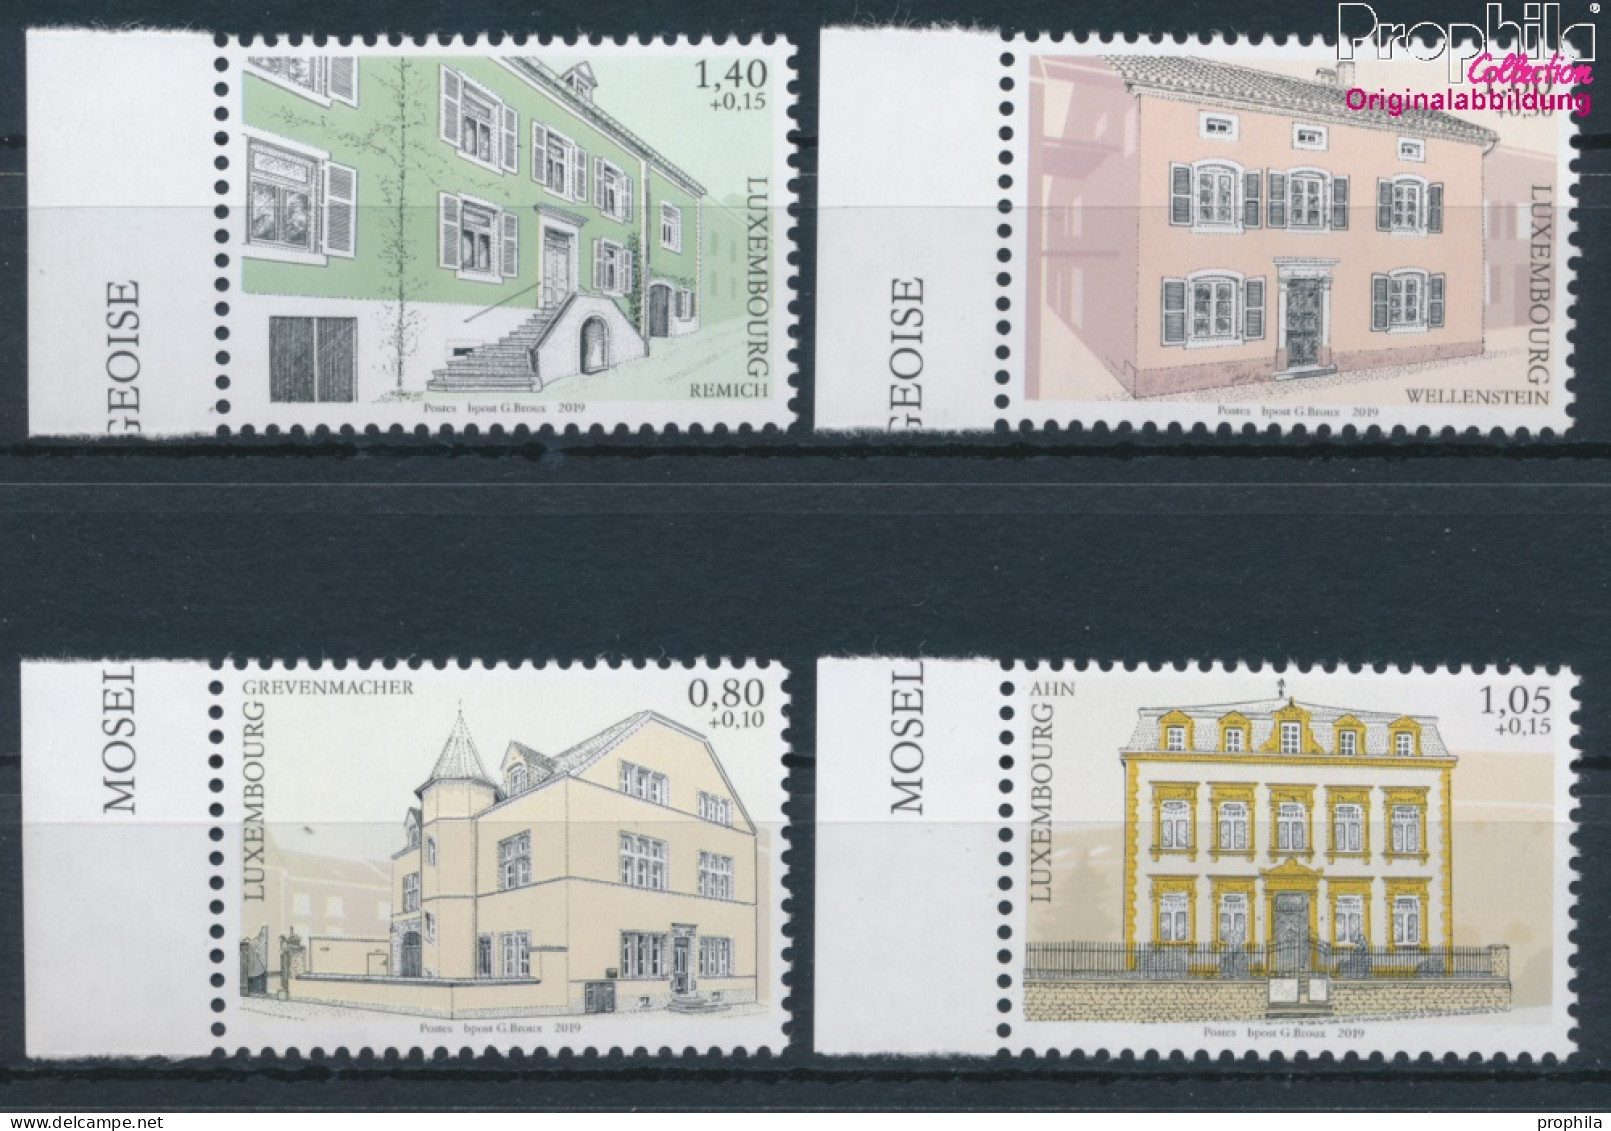 Luxemburg 2217-2220 (kompl.Ausg.) Postfrisch 2019 Historische Architektur (10377605 - Unused Stamps